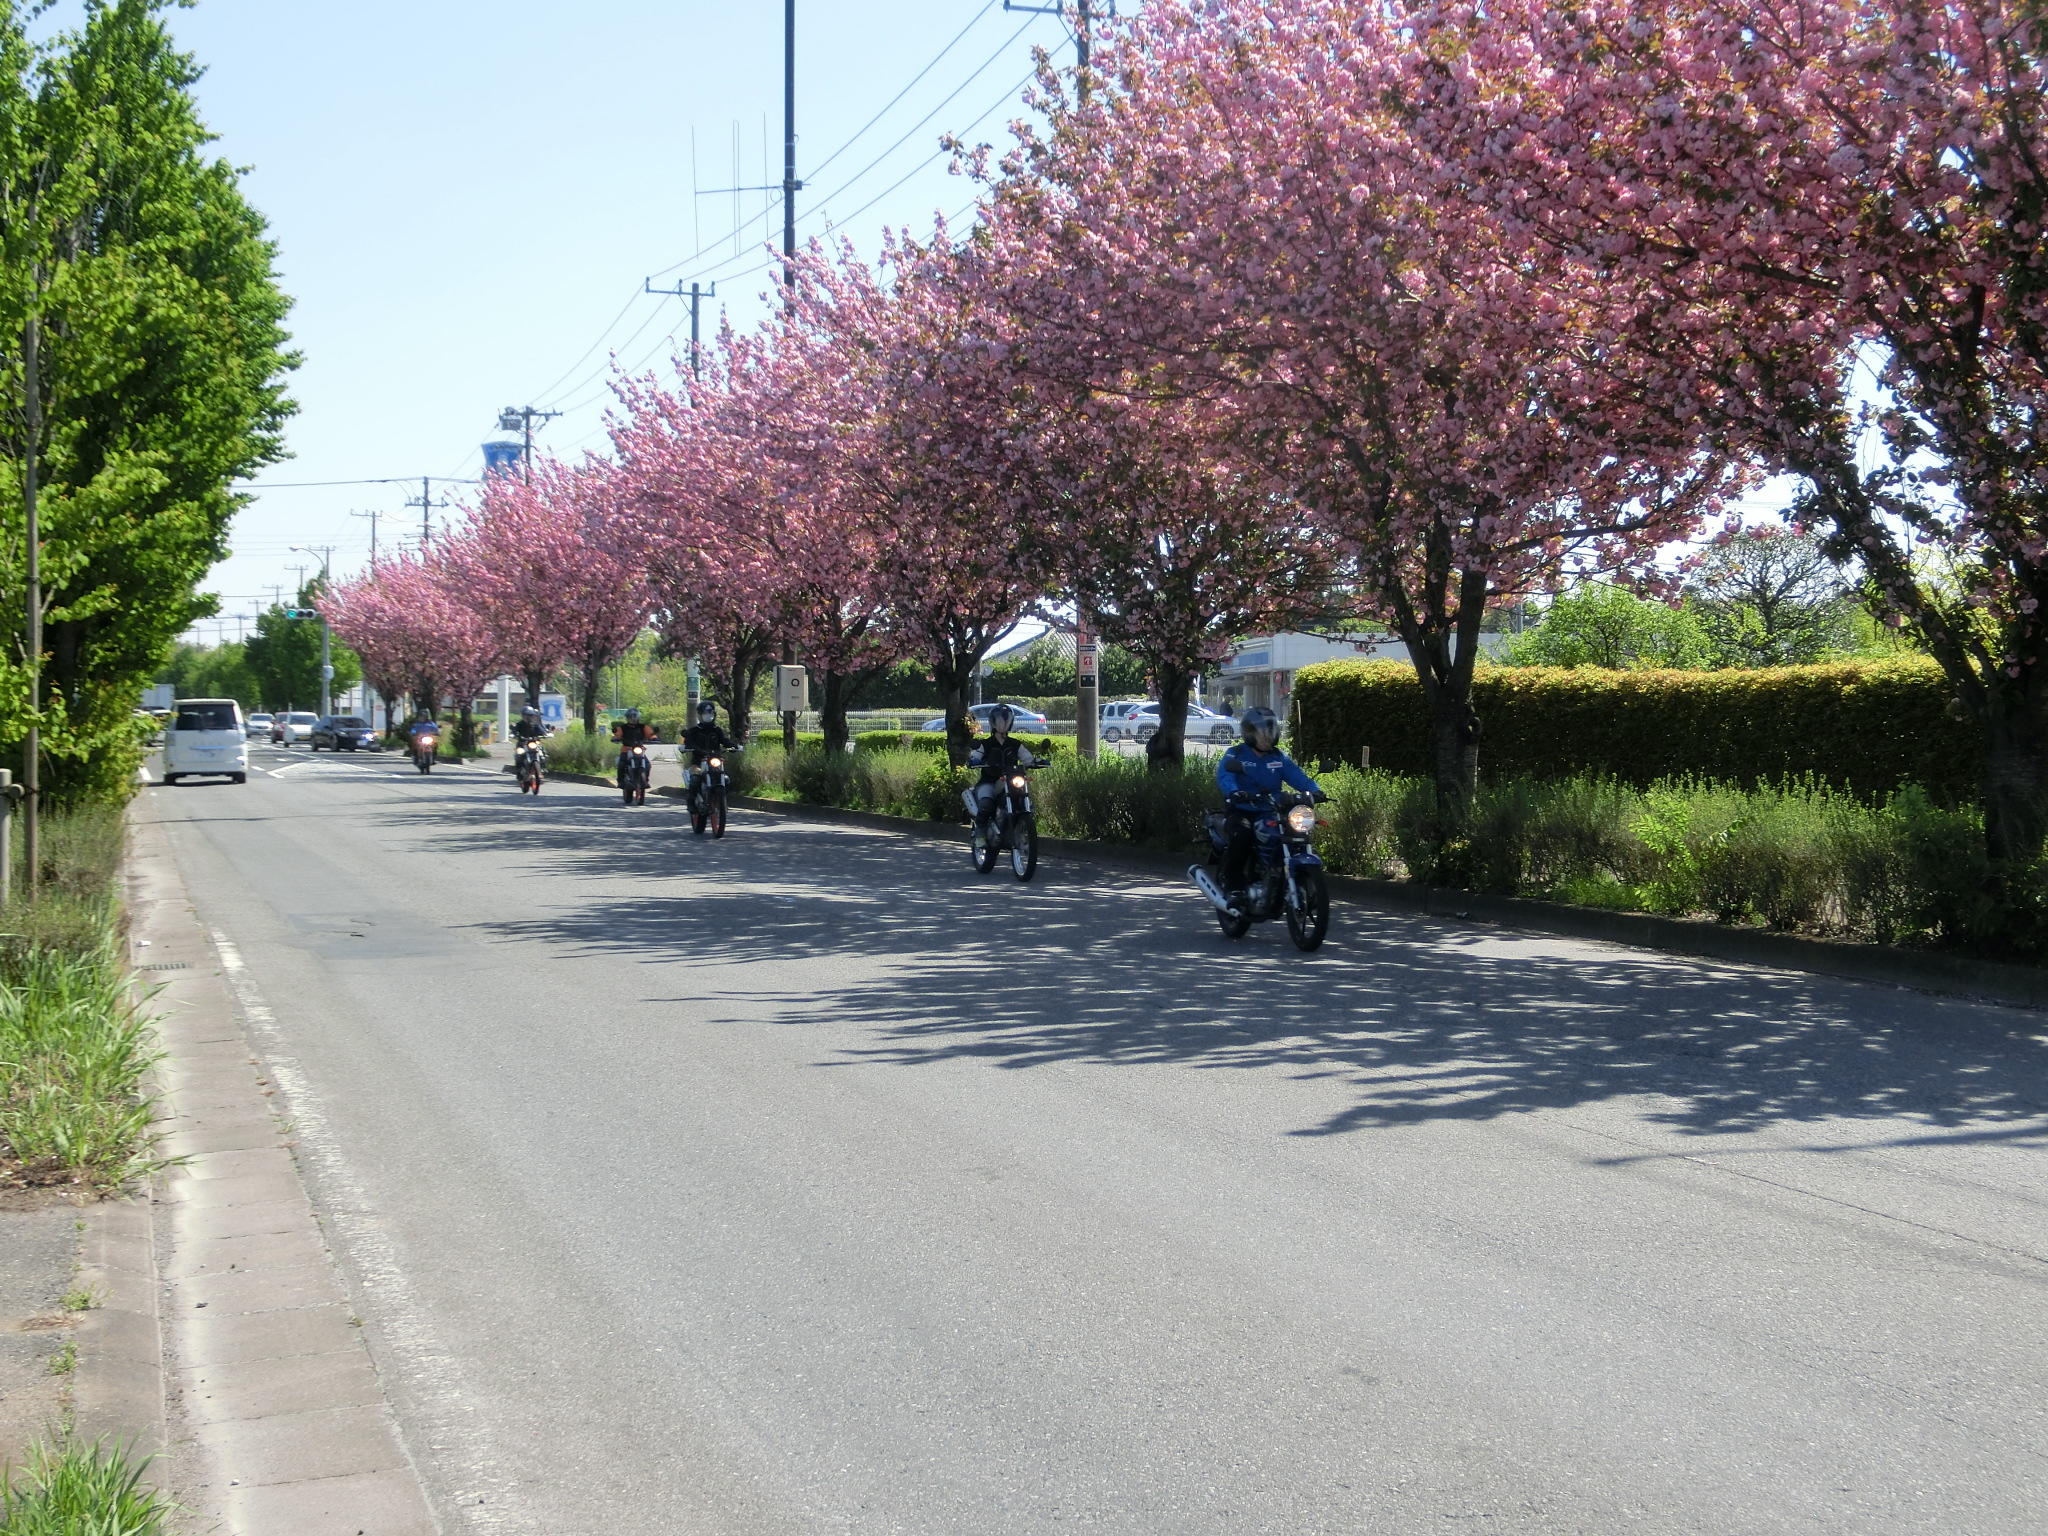 ツーリング途中では、八重桜が満開!!